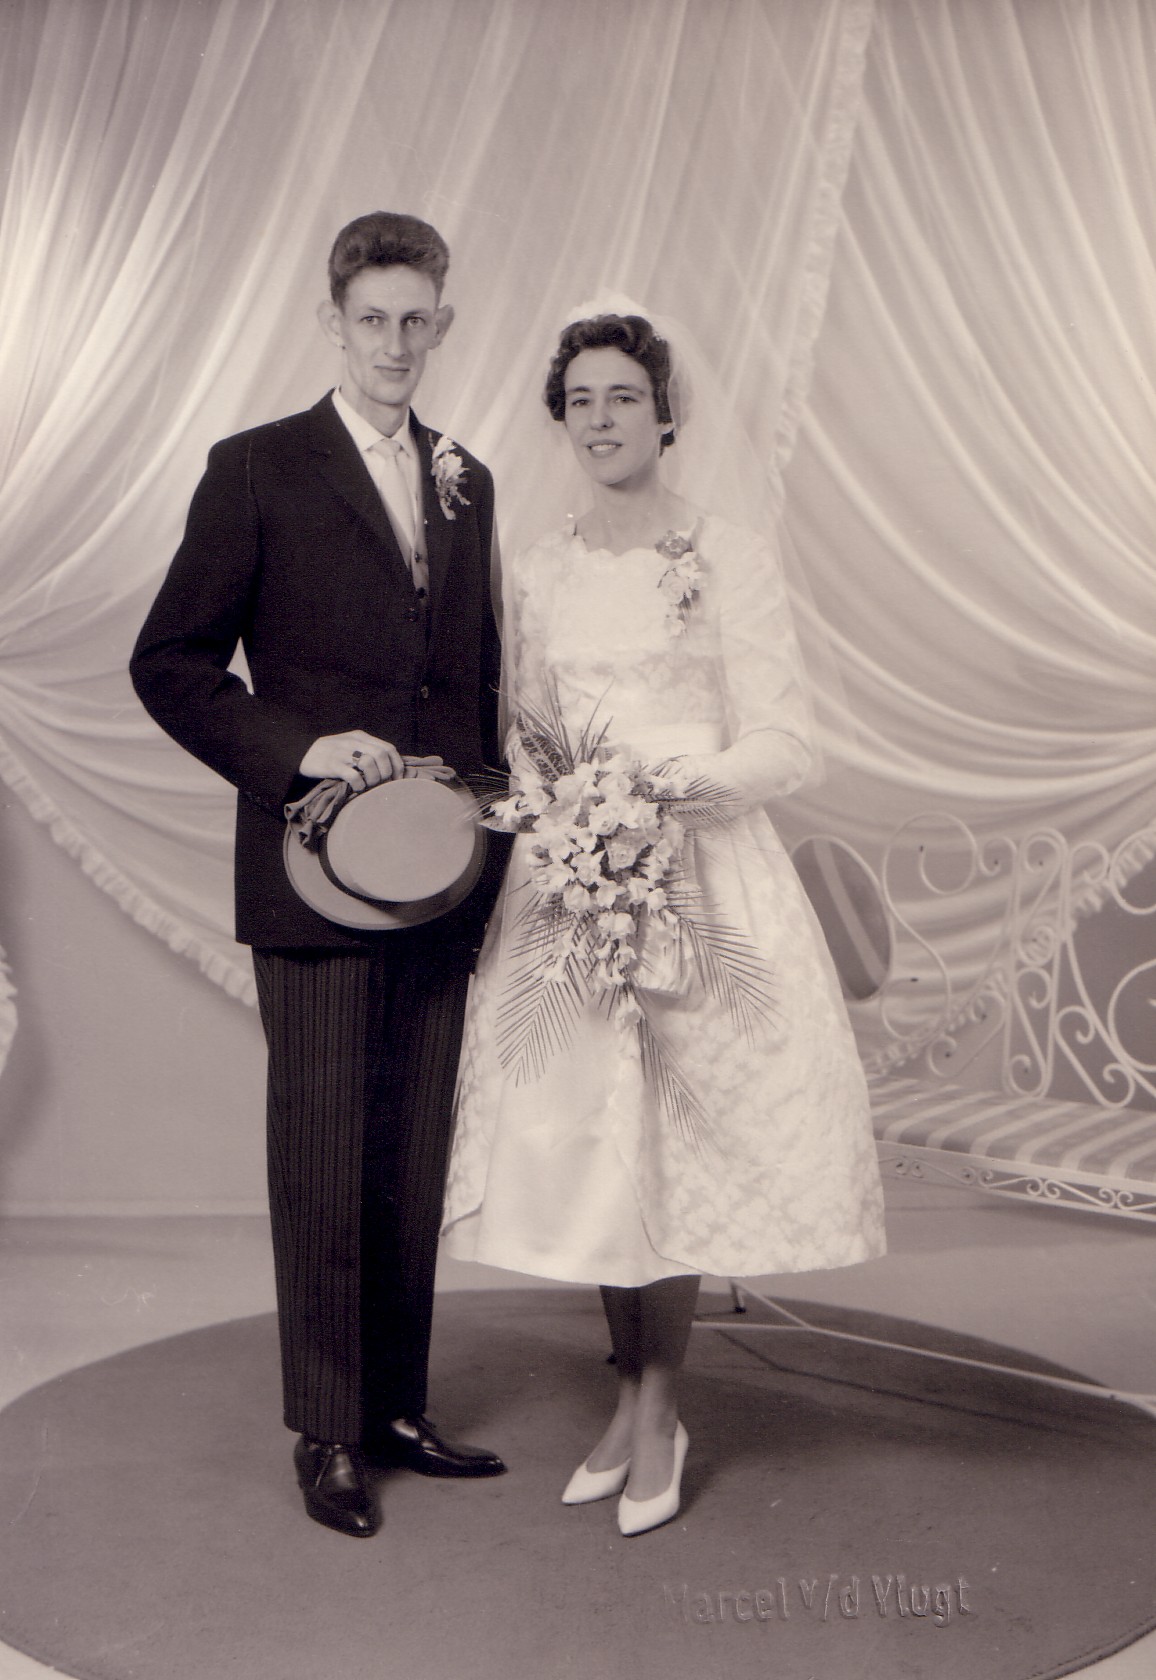 Huwelijk Hendrina M. van Eijmeren en Dirk van Velden (1961)